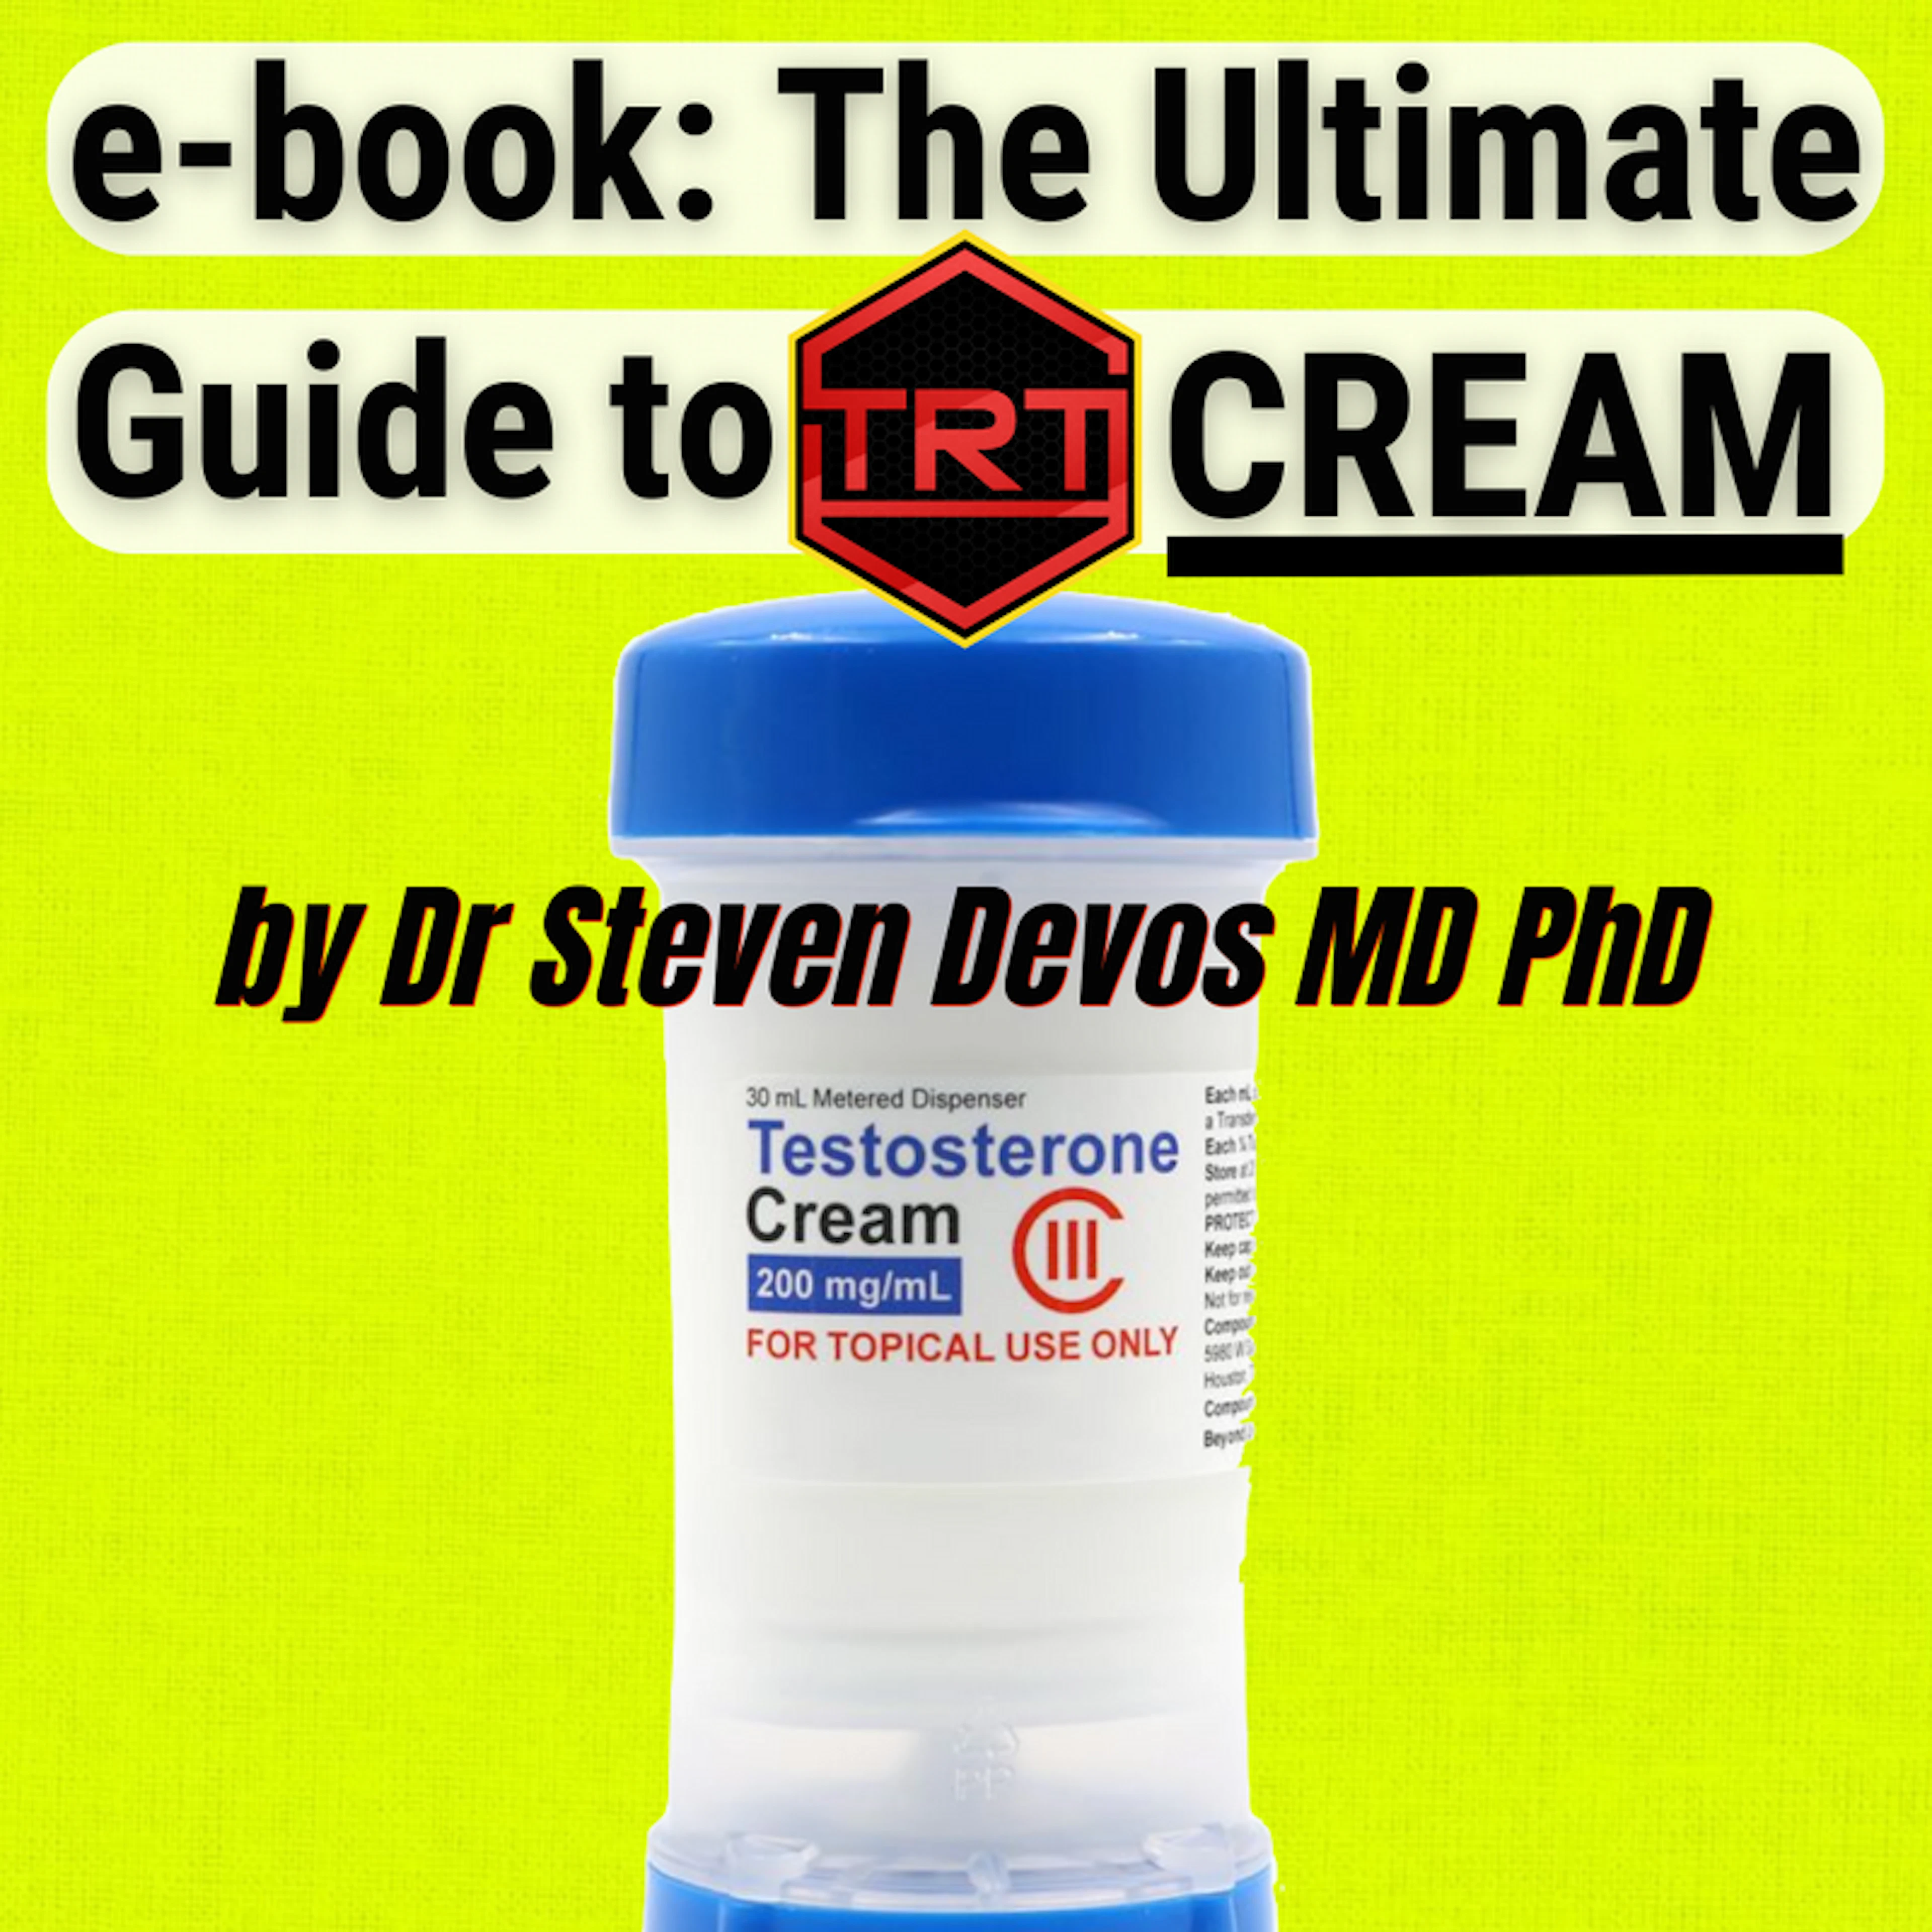 e-book: The Ultimate Guide to TRT Cream